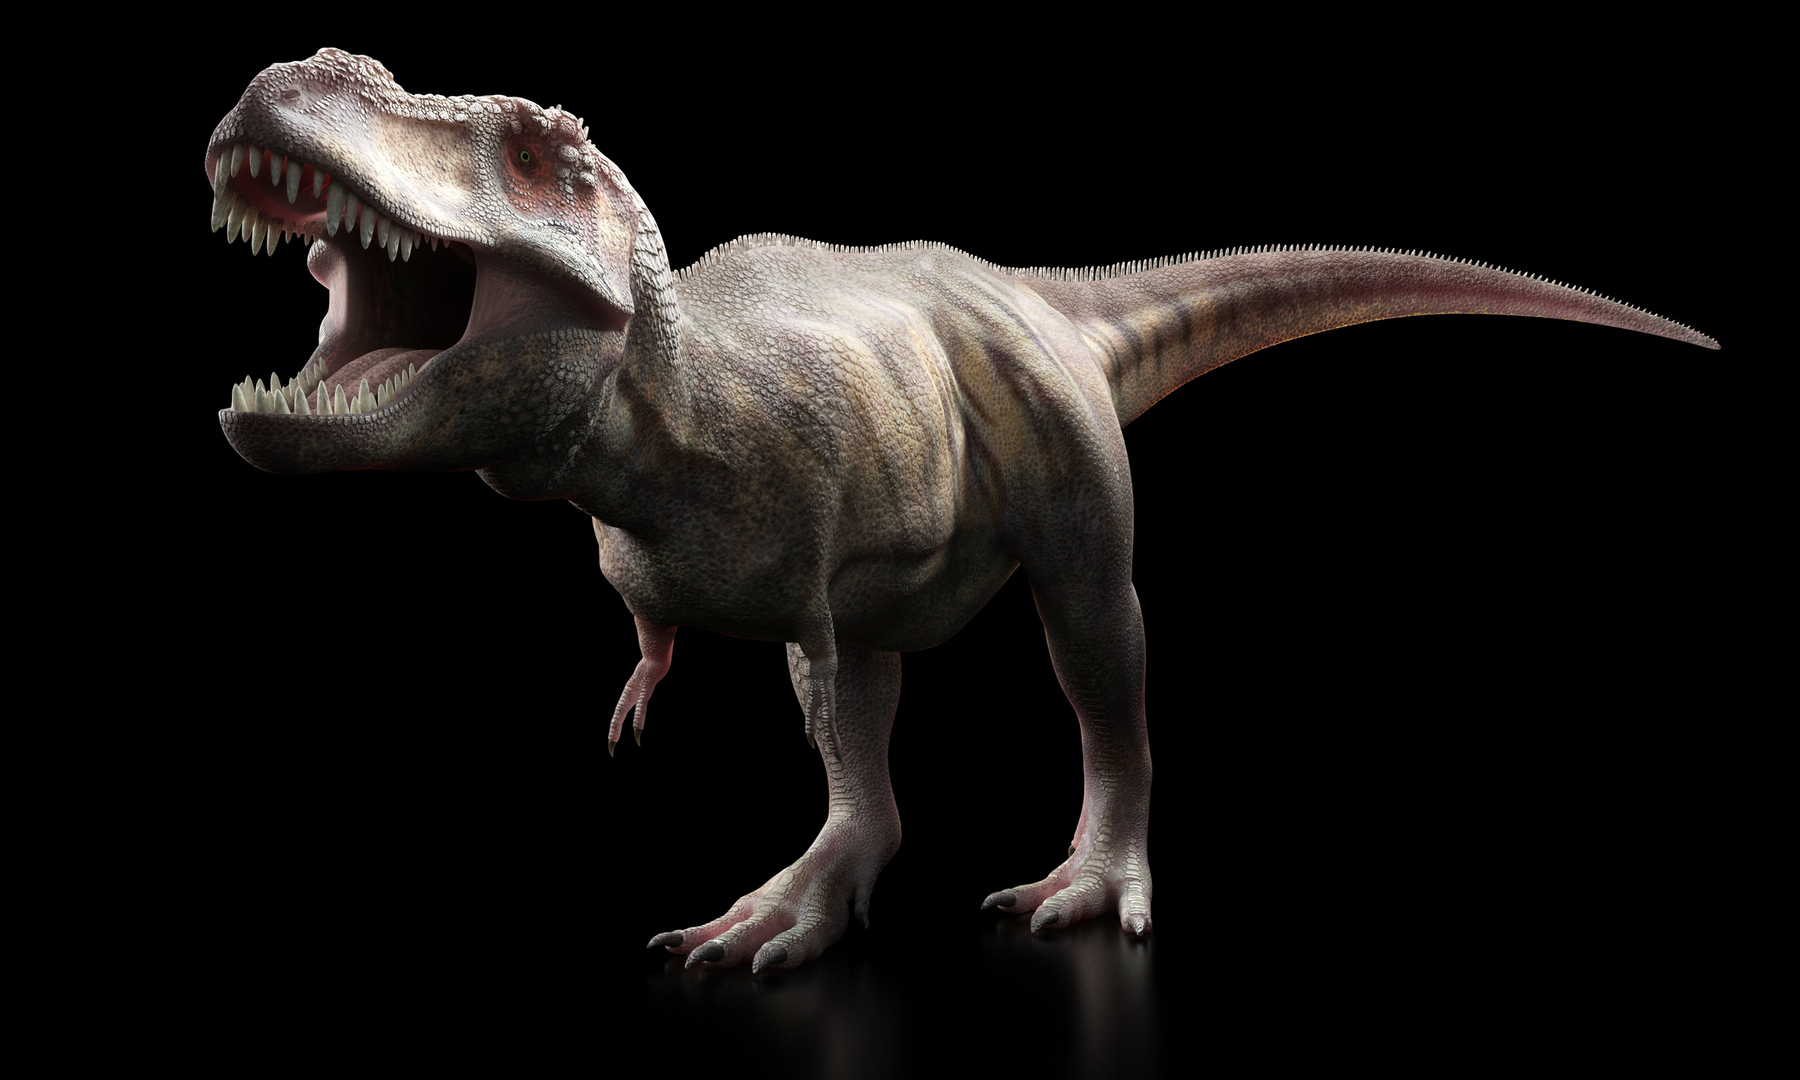 تحليل أحفوري يكشف عن ديناصور غريب بحجم الدجاجة يُطلق عليه اسم 